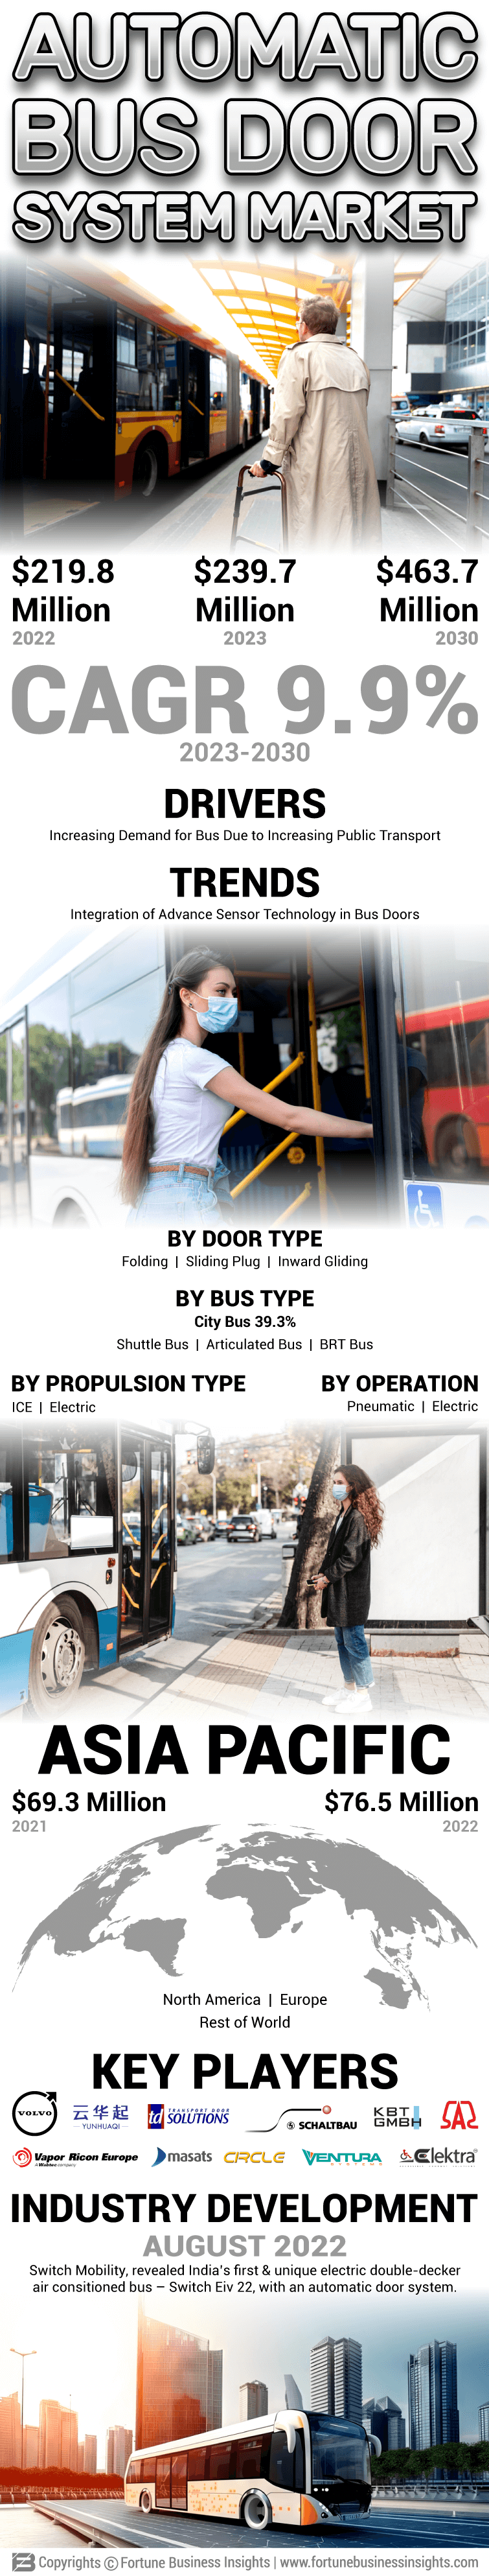 Autonomous Bus Door System Market